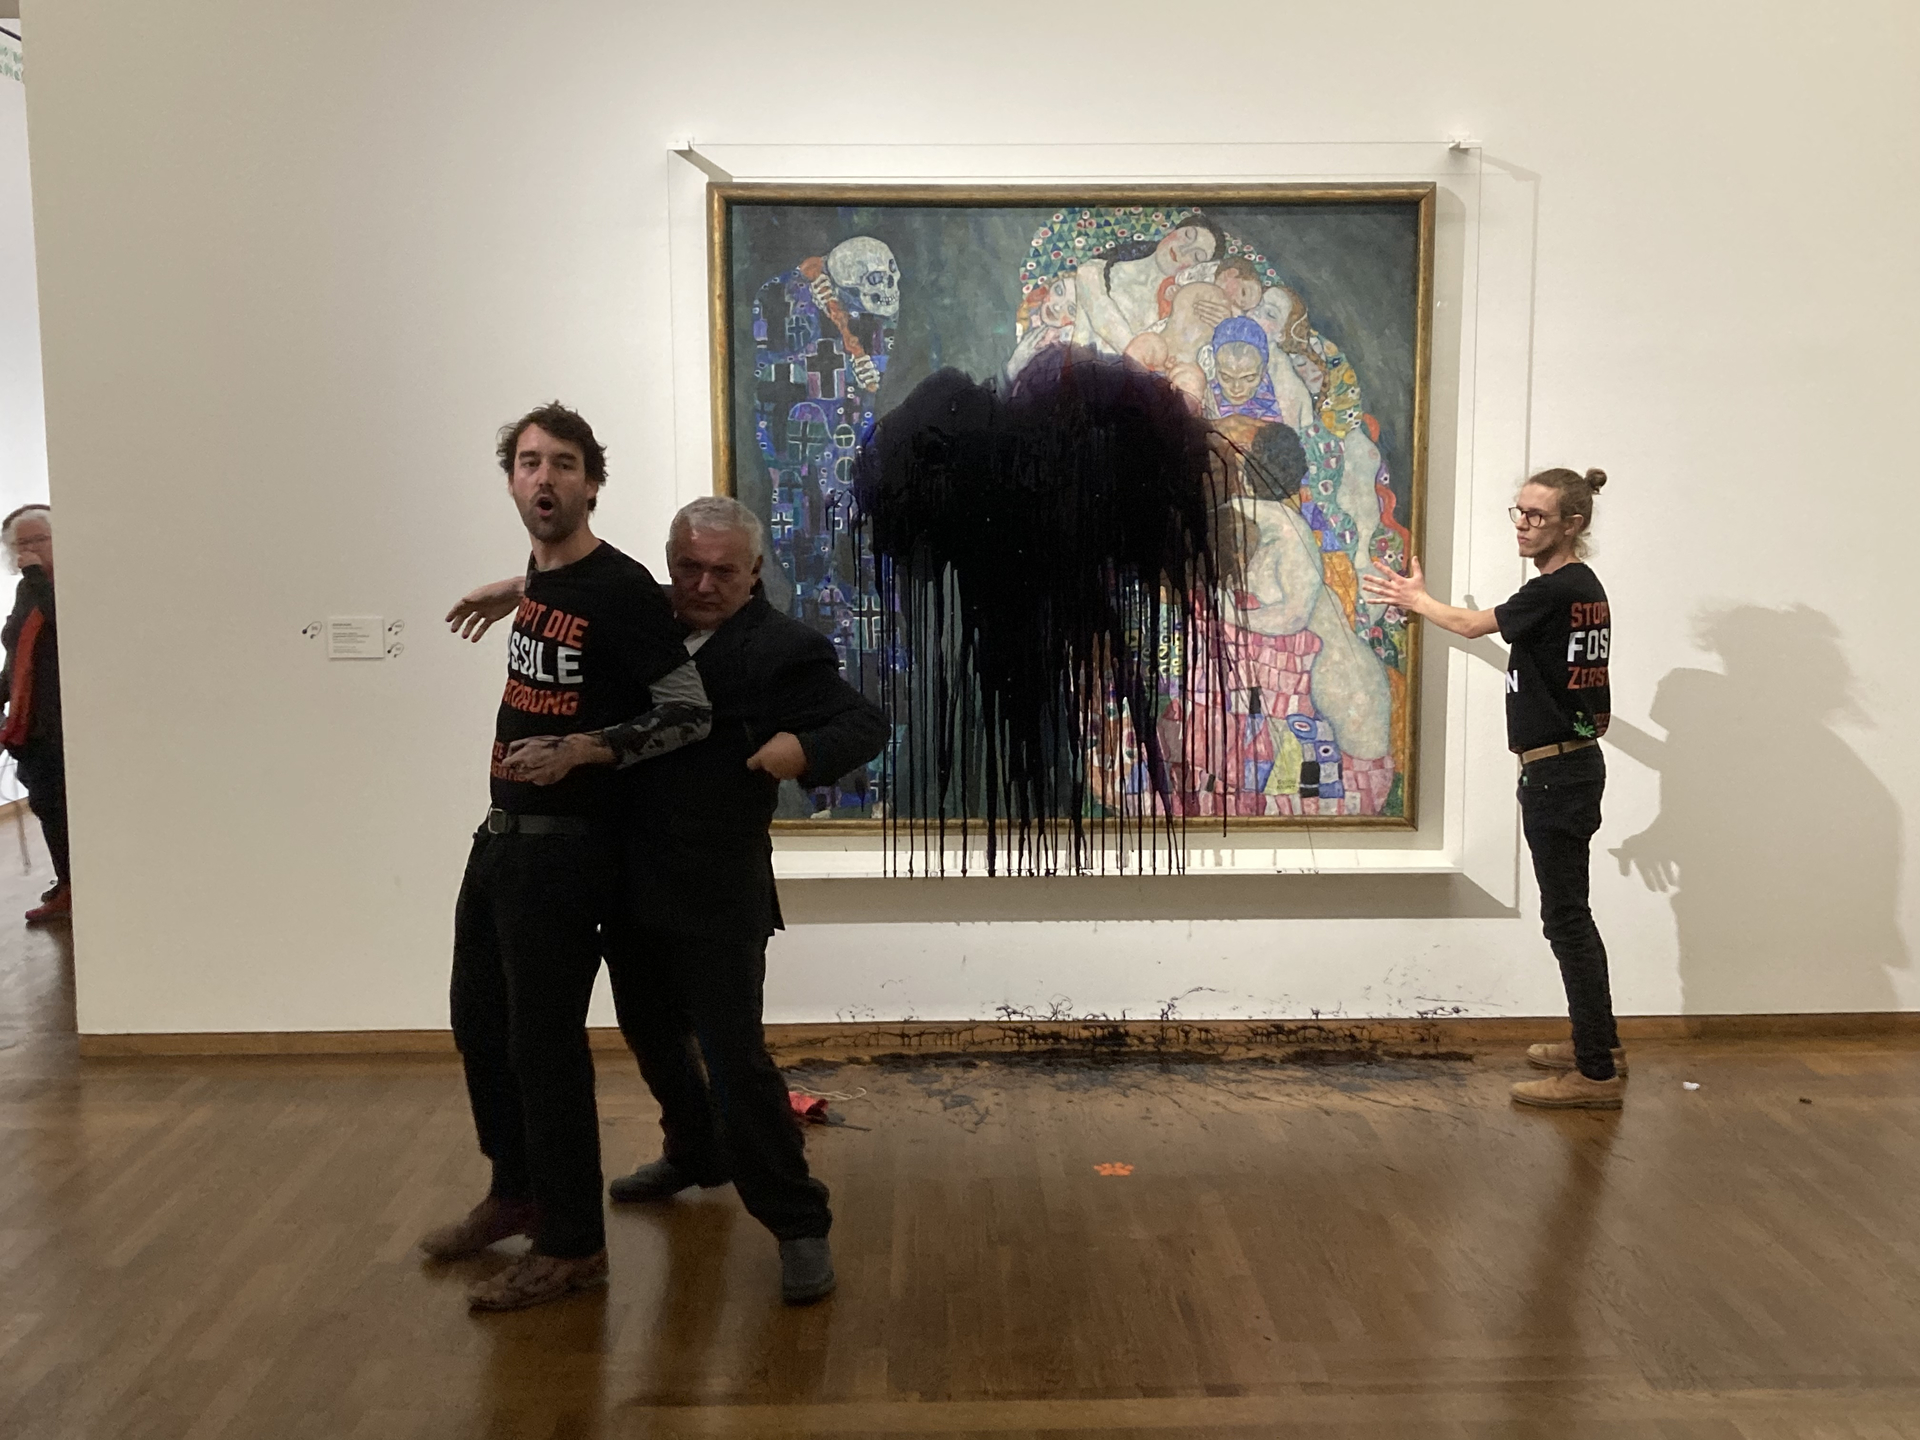 Activistas climáticos arrojan líquido negro a pintura de Gustav Klimt